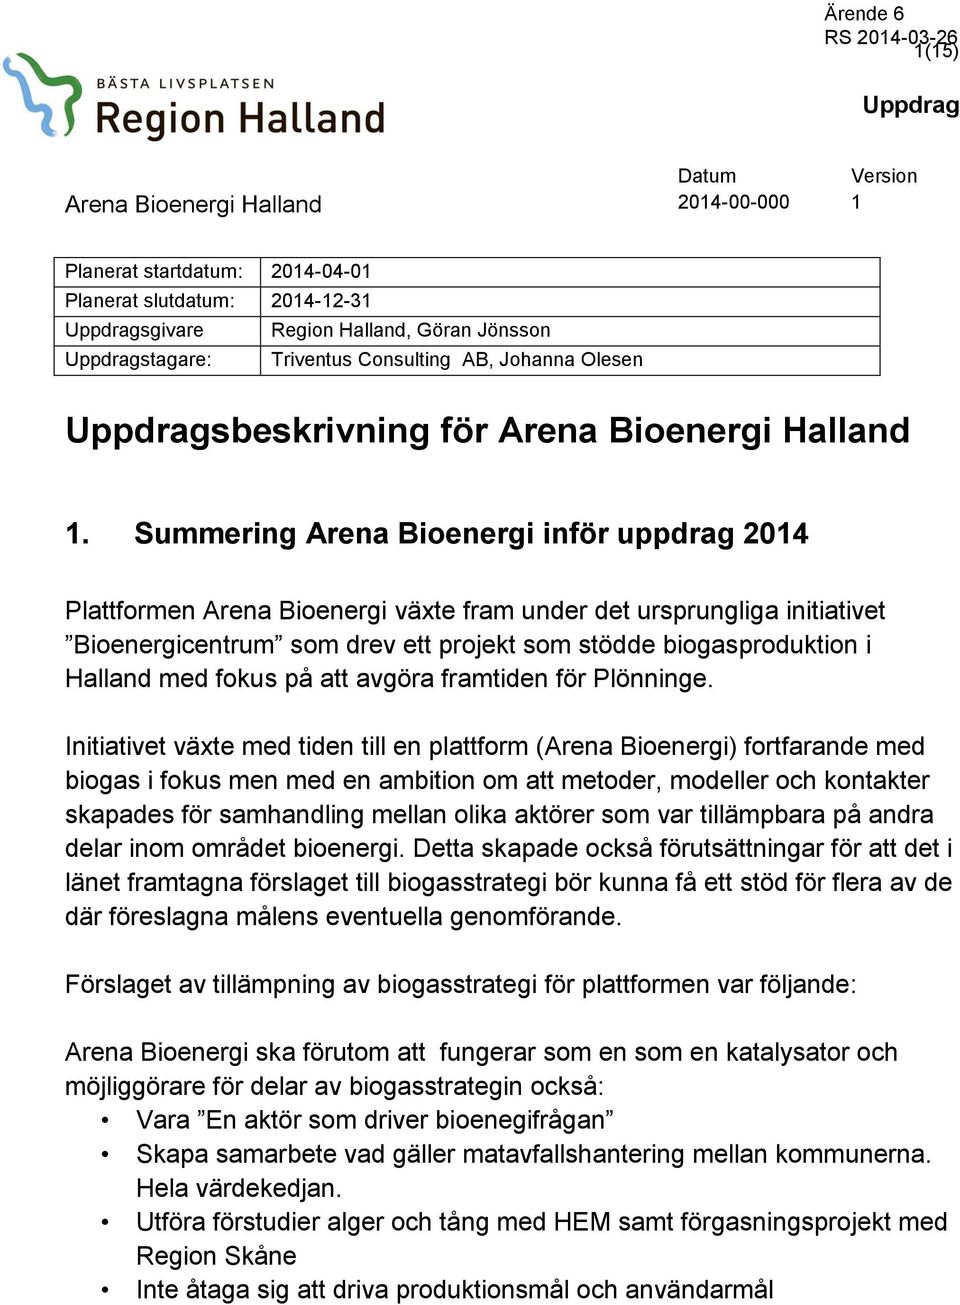 Summering Arena Bioenergi inför uppdrag 2014 Plattformen Arena Bioenergi växte fram under det ursprungliga initiativet Bioenergicentrum som drev ett projekt som stödde biogasproduktion i Halland med